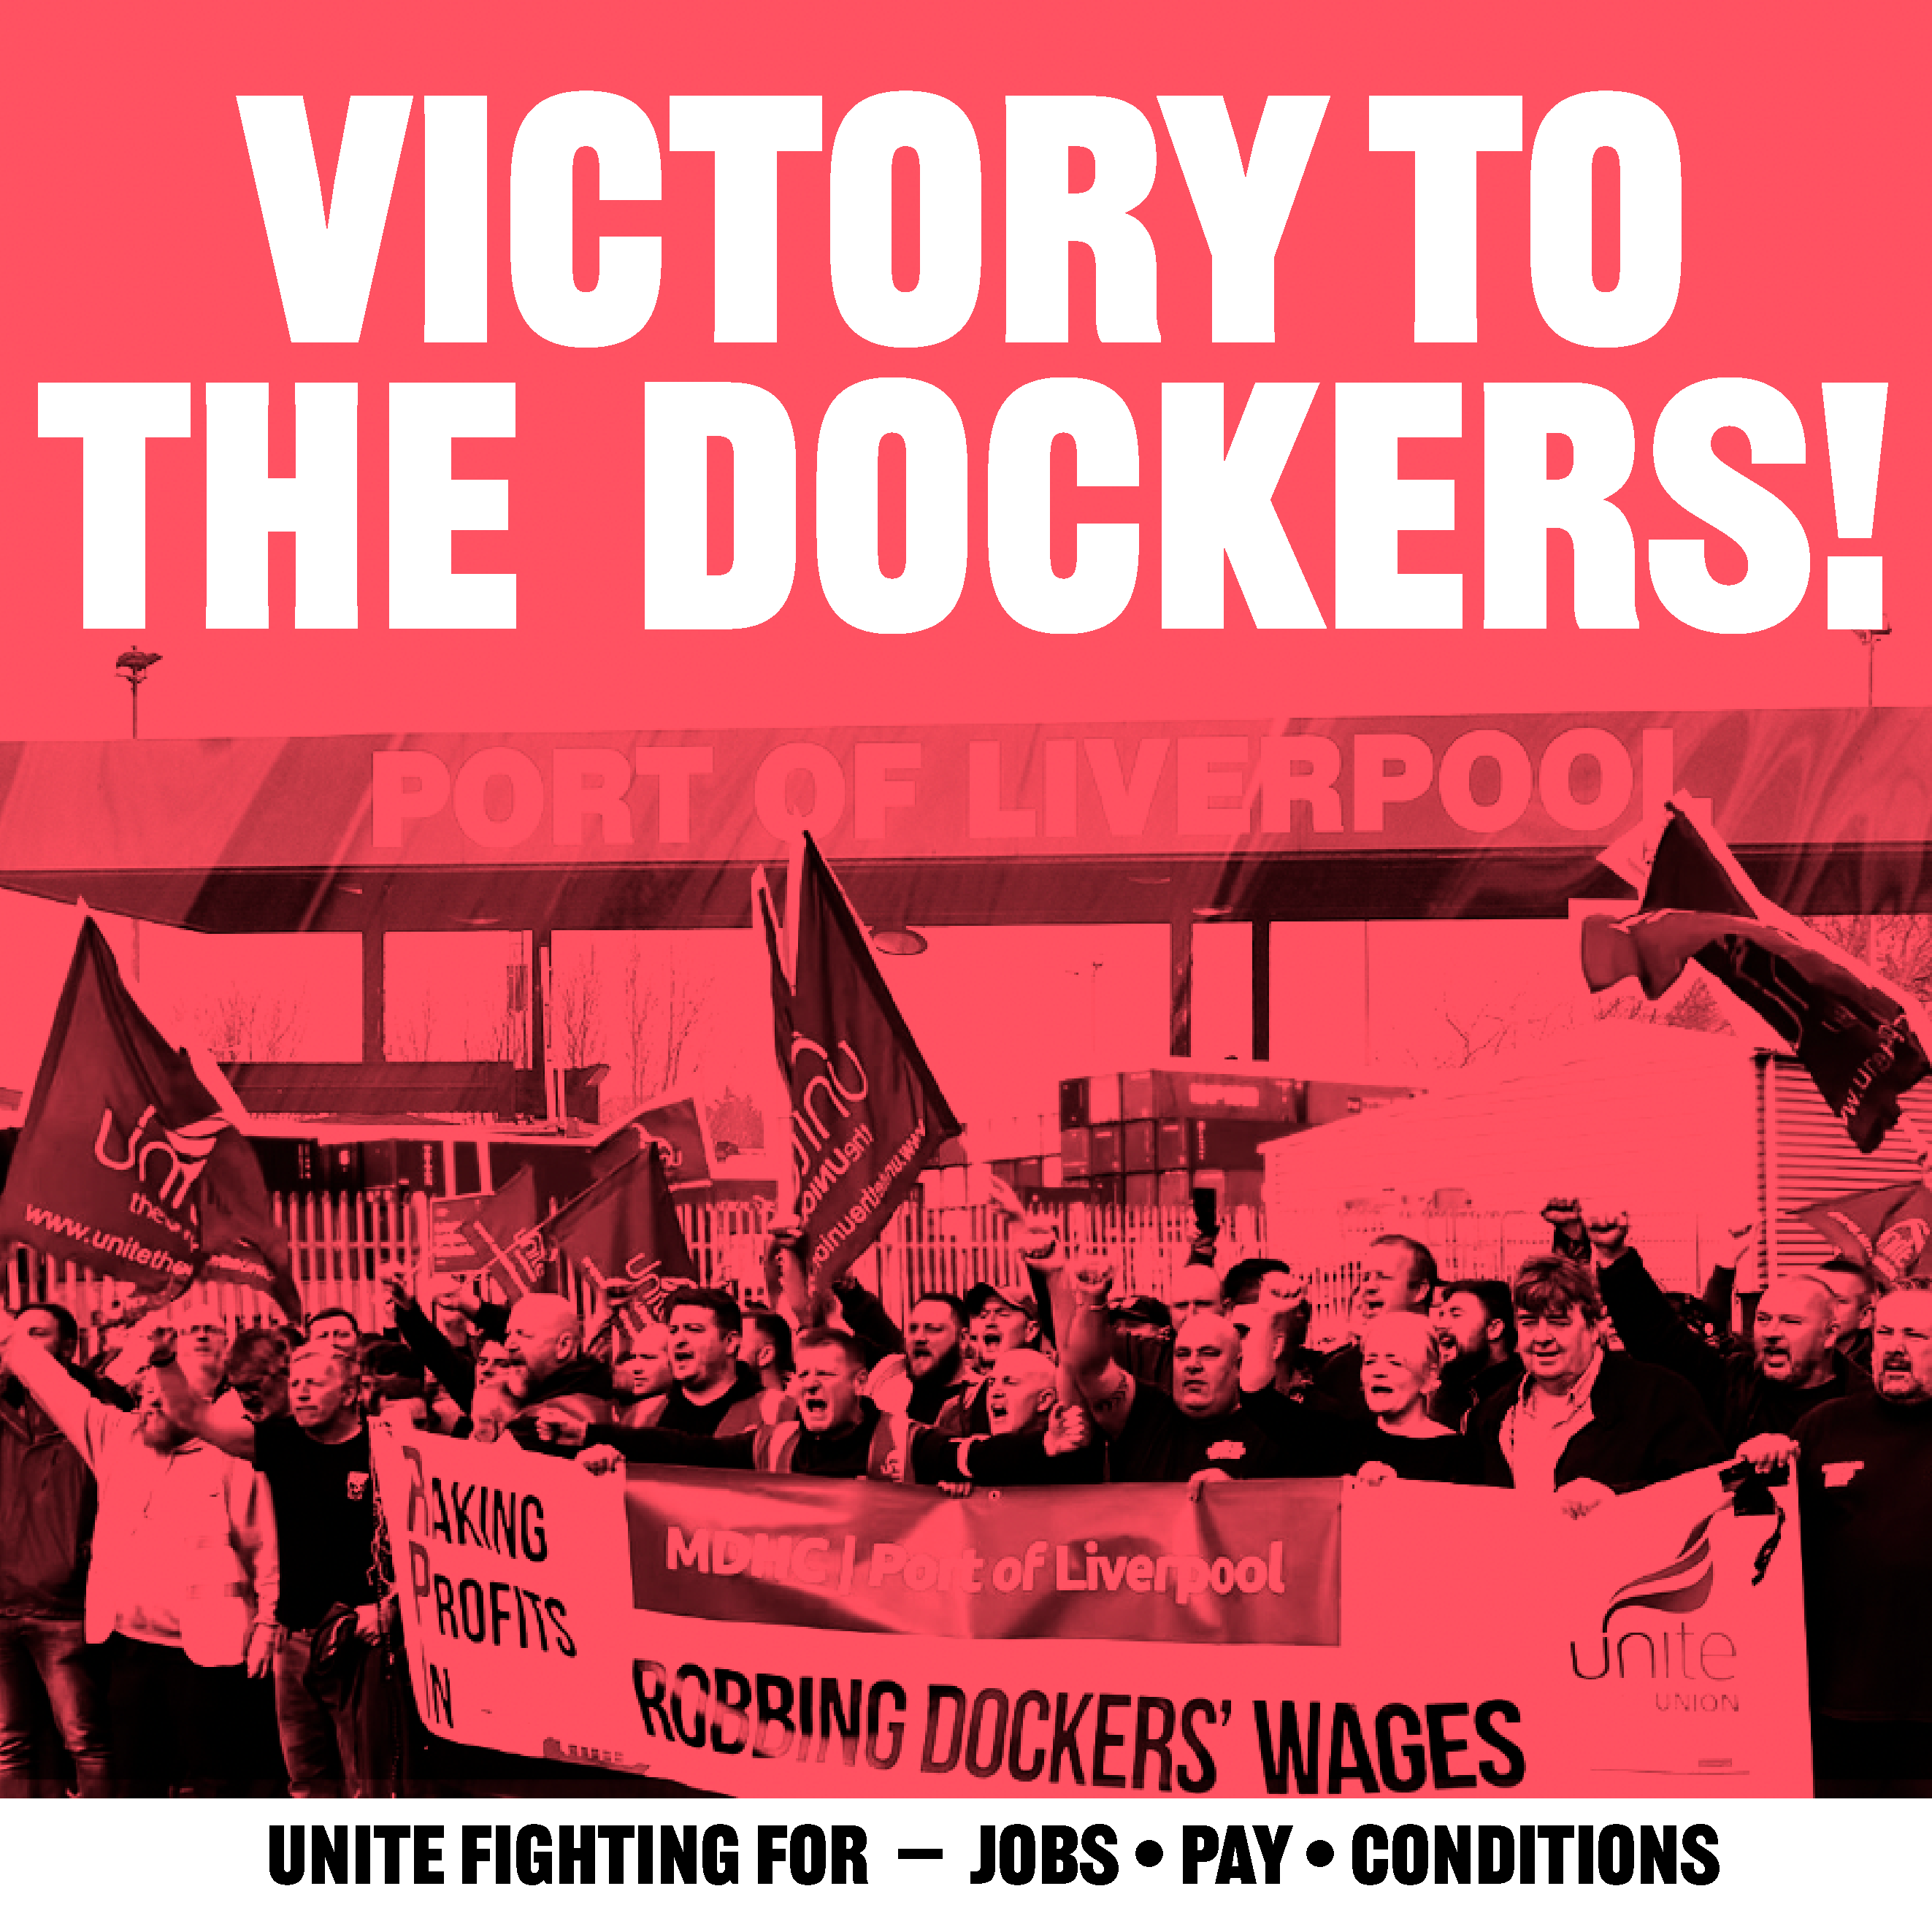 Southamptonští dokaři odmítají vykládat lodě odkloněné z liverpoolských doků, kde probíhá stávka